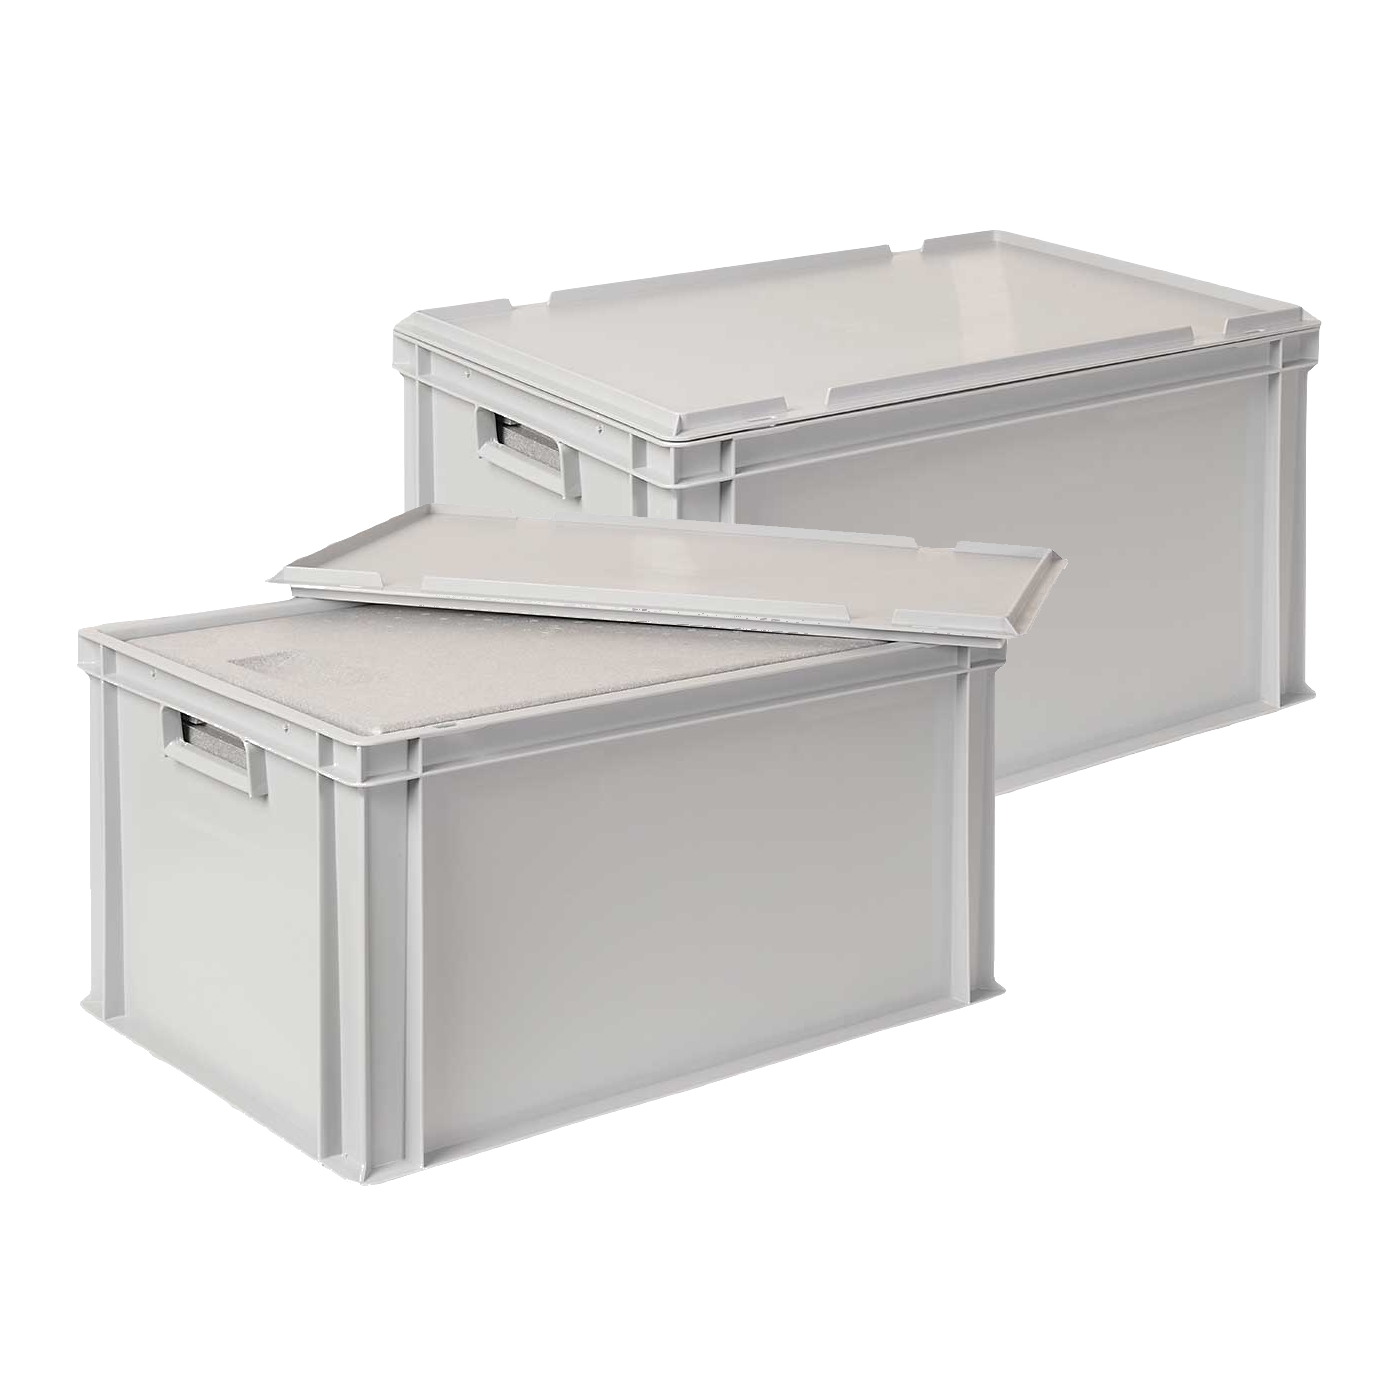 2x EPS-Thermobox in Eurobox mit Deckel, LxBxH 600x400x320 mm, grau, Eurobehälter mit EPS / EPP-Isolierbox, Eurobehälter, Behälter und Kästen